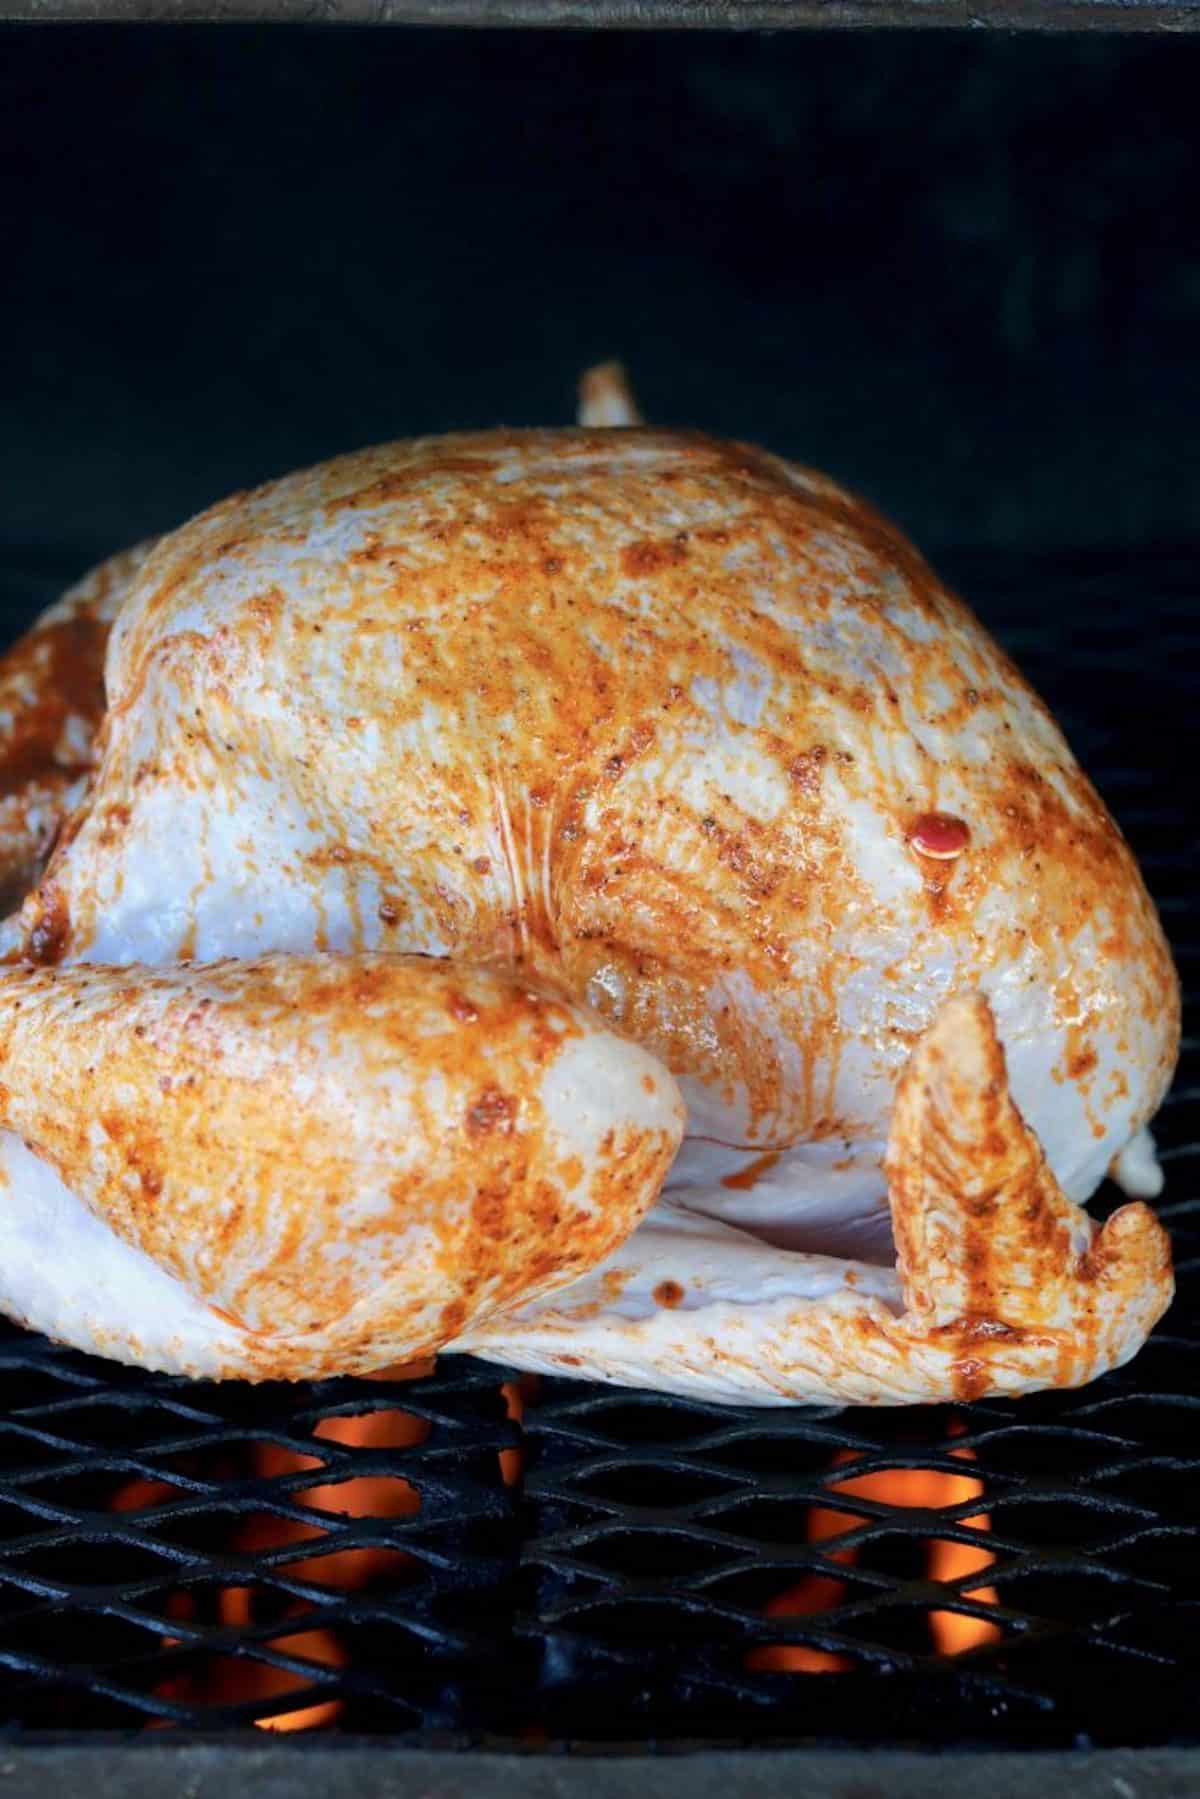 Turkey on a grill.